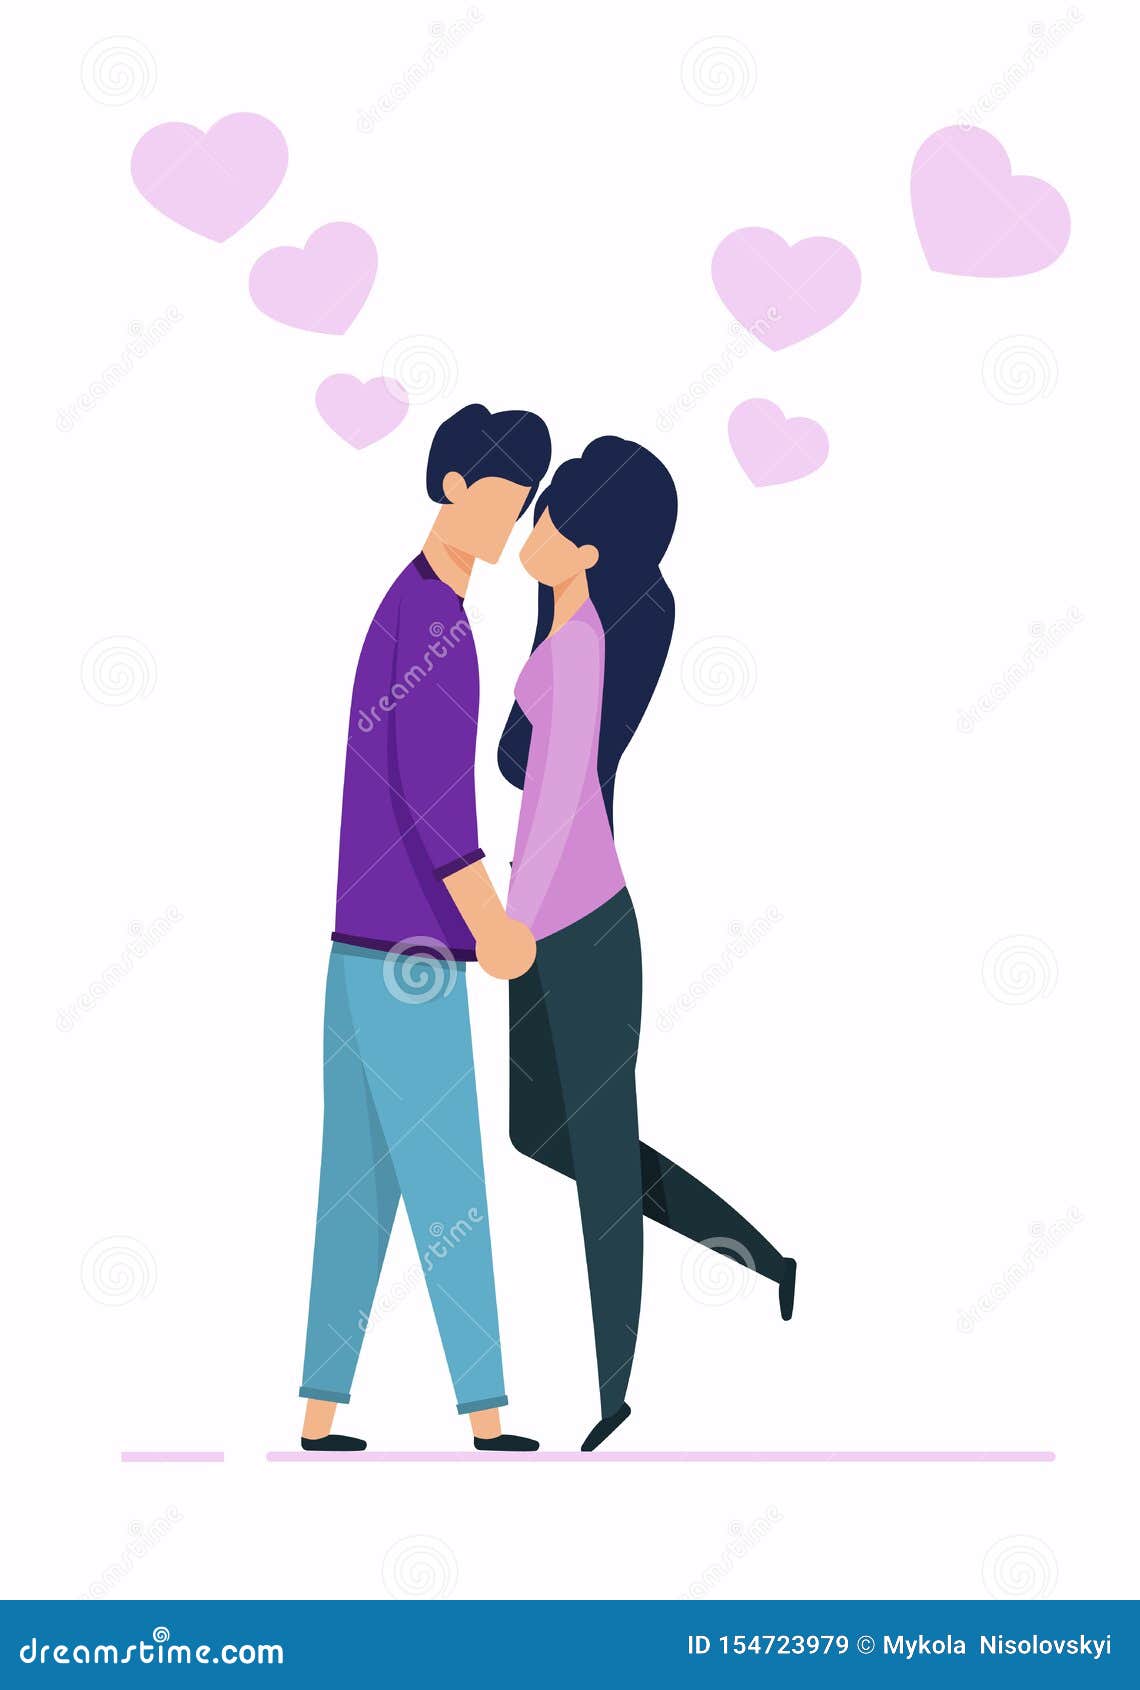 Kissing Man Woman Cartoon Characters Stock Illustrations – 296 Kissing Man  Woman Cartoon Characters Stock Illustrations, Vectors & Clipart - Dreamstime